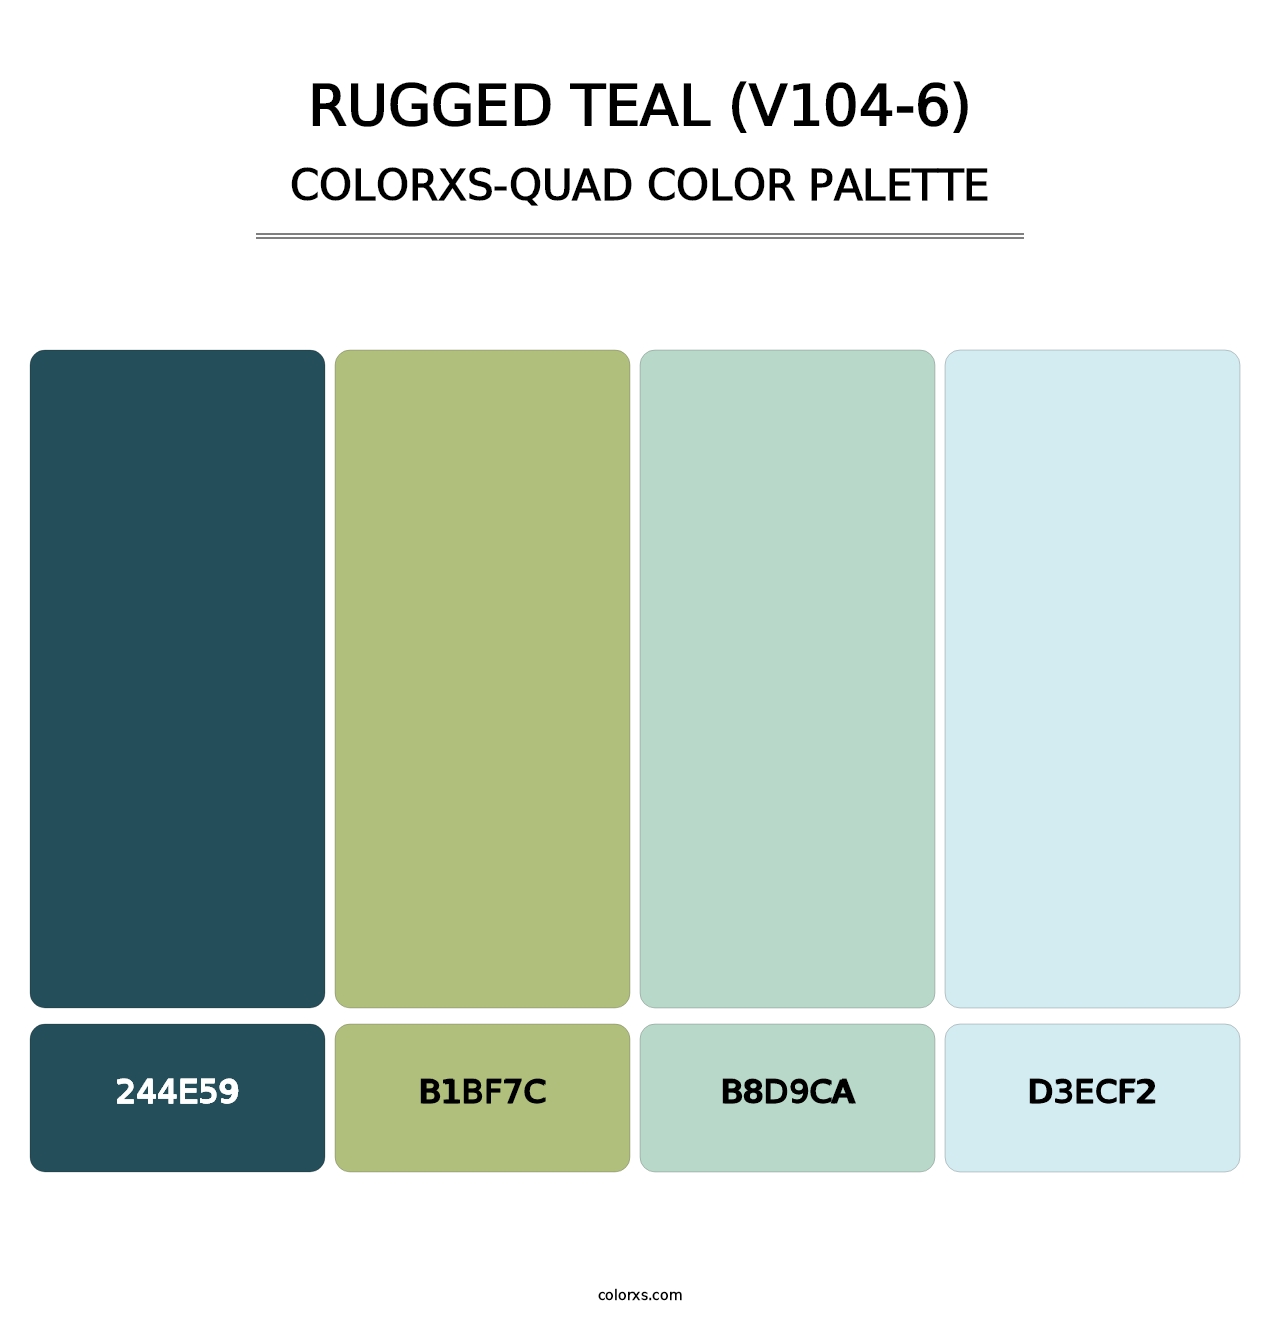 Rugged Teal (V104-6) - Colorxs Quad Palette